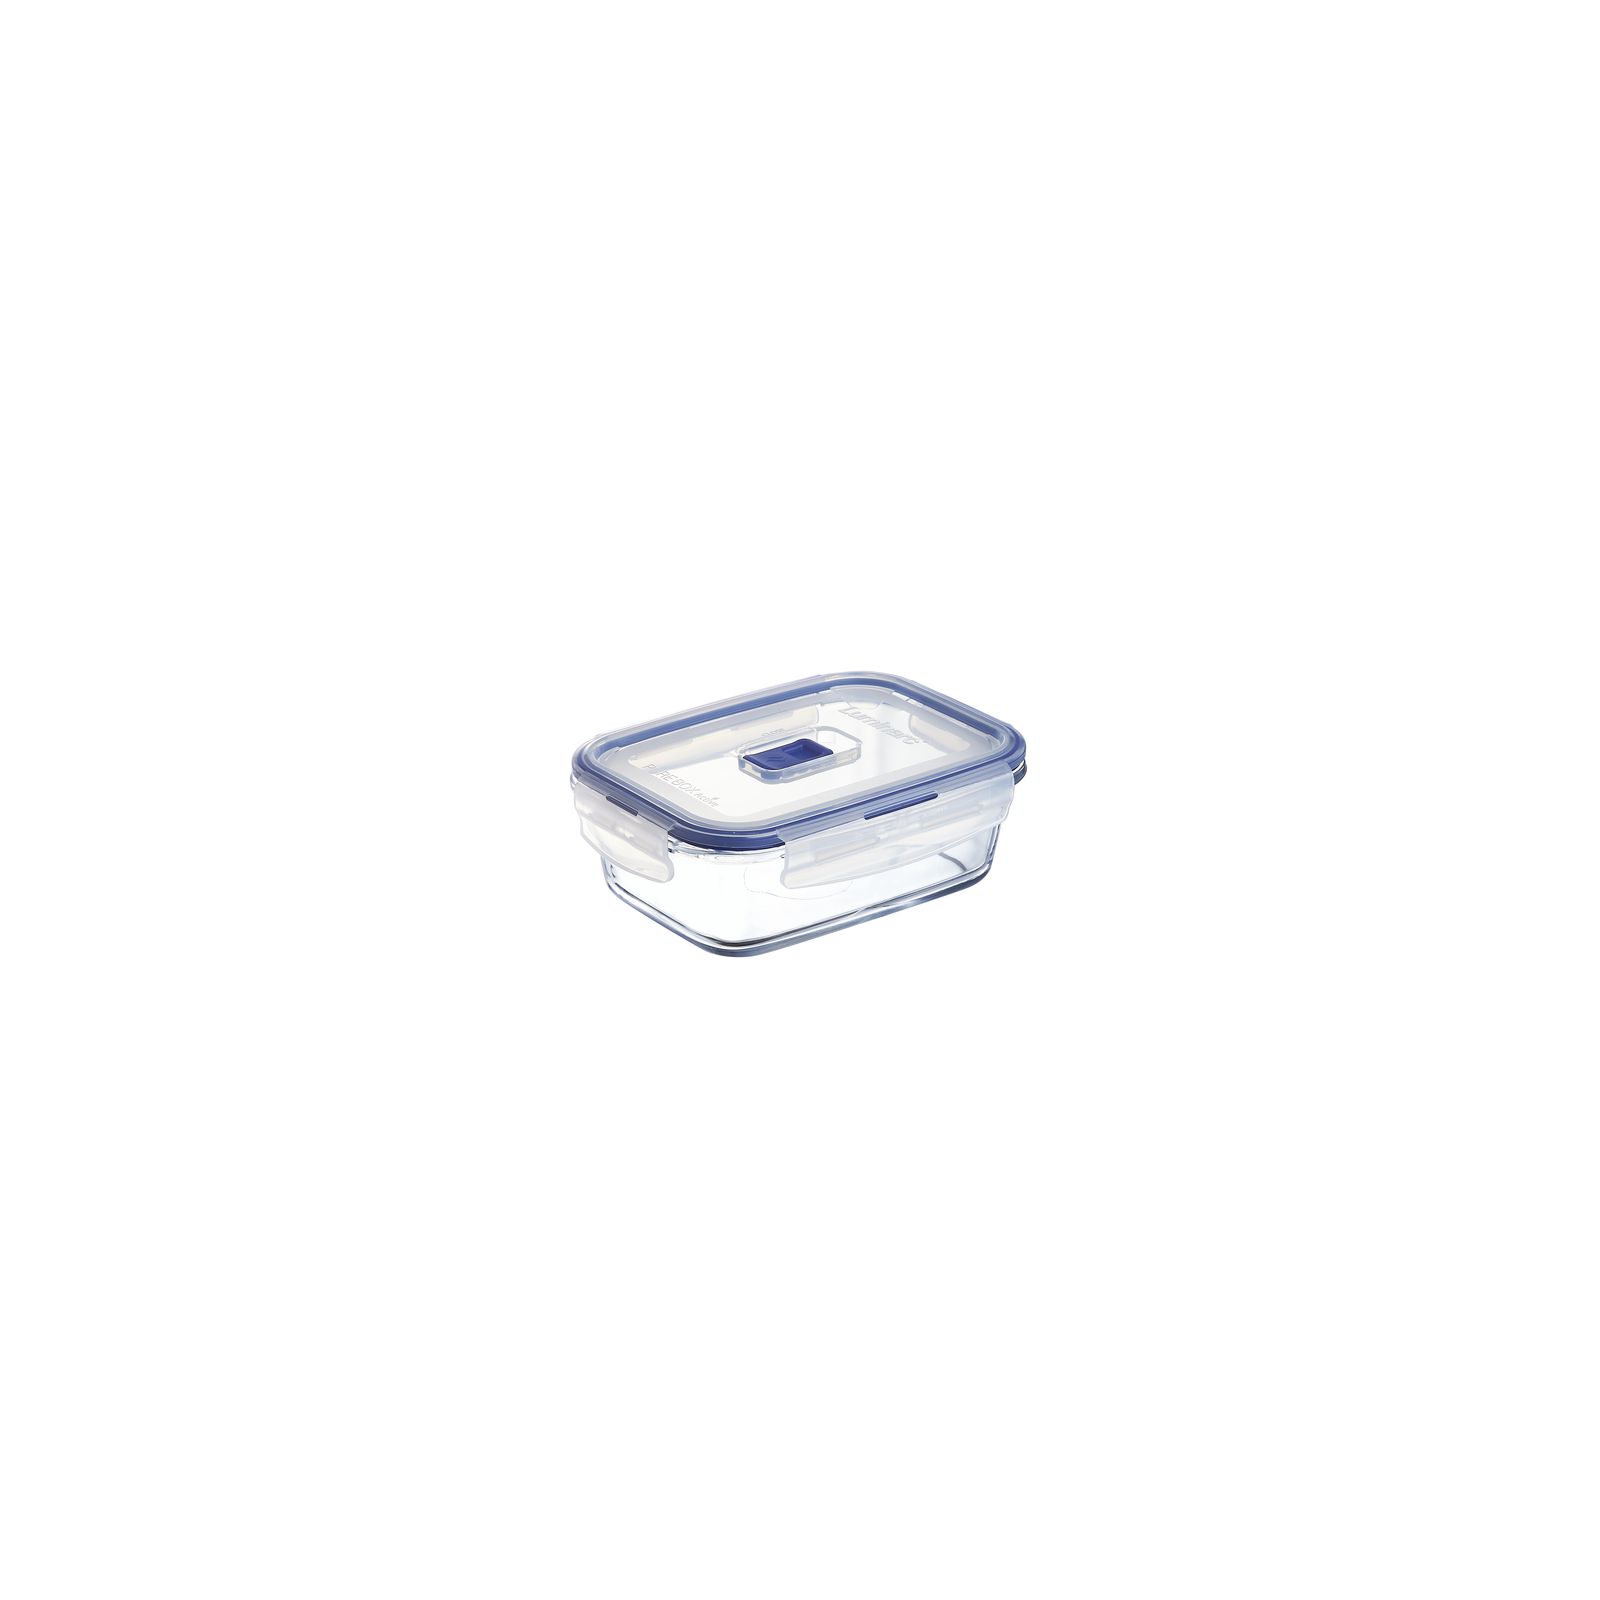 Пищевой контейнер Luminarc Pure Box Active набор 4шт прямоуг. 380мл/820мл/1220мл/1970мл (P5277) изображение 3